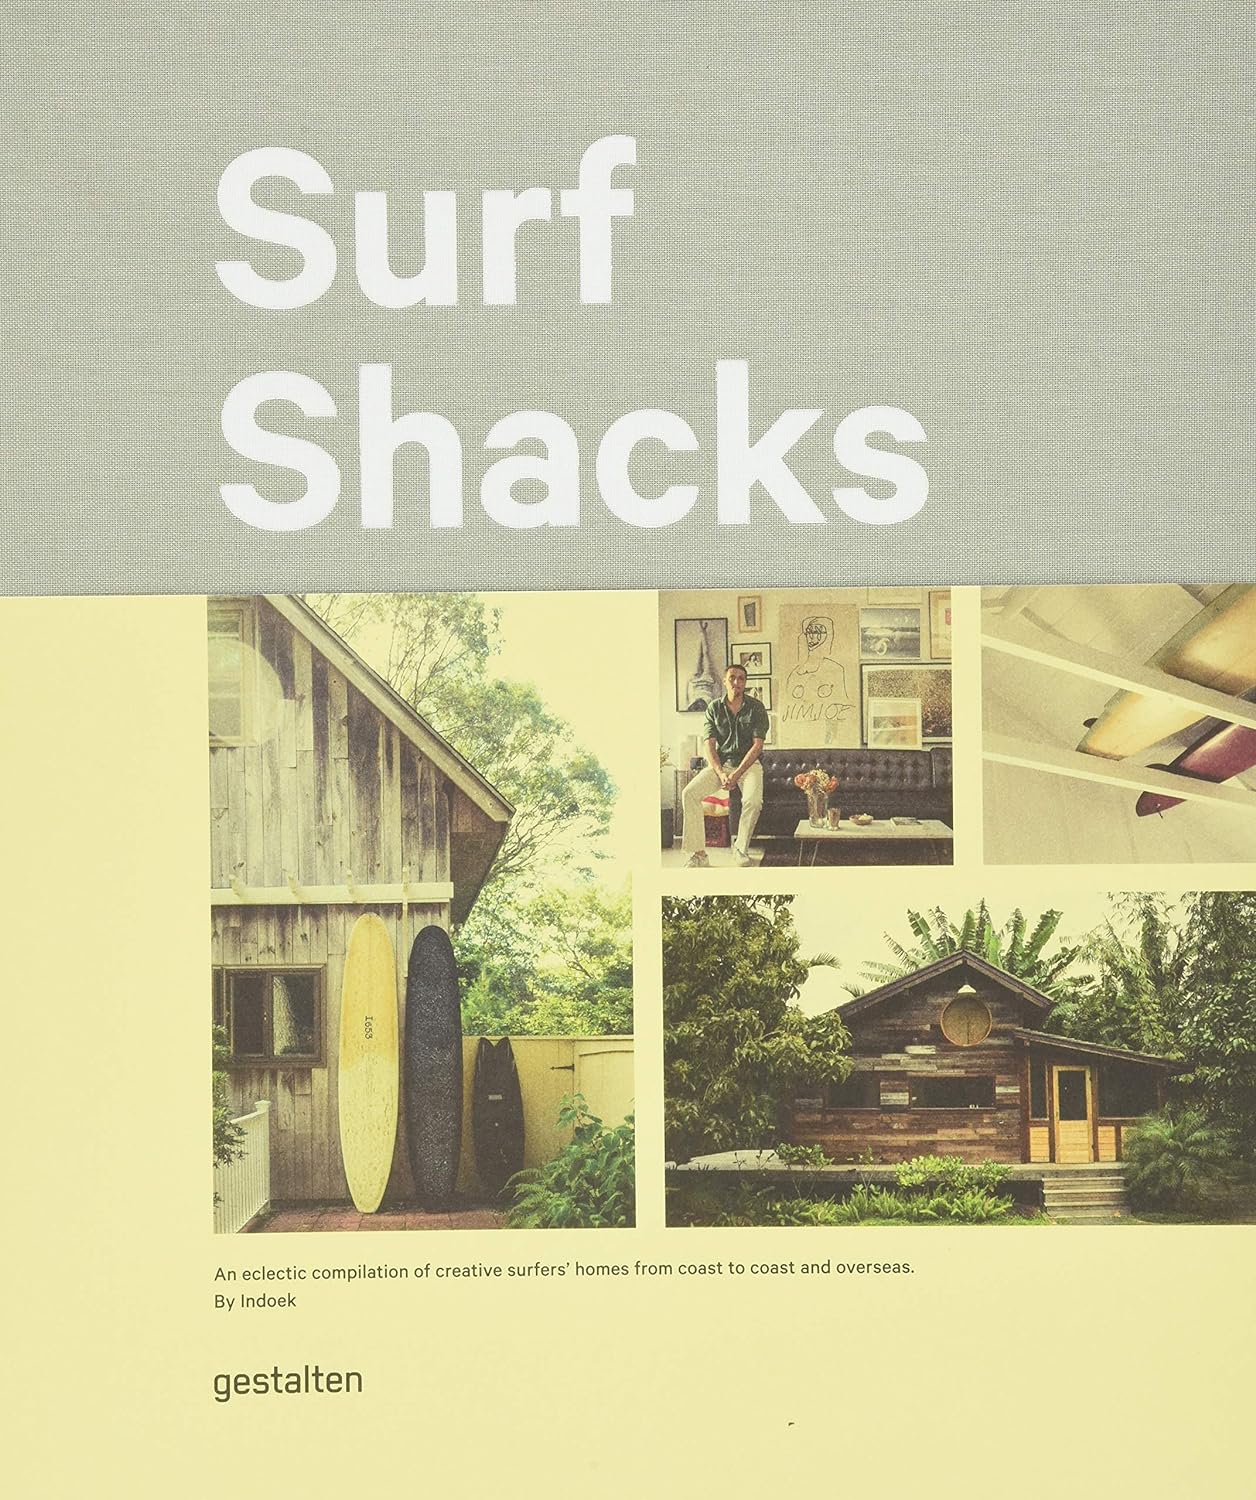 surf shacks